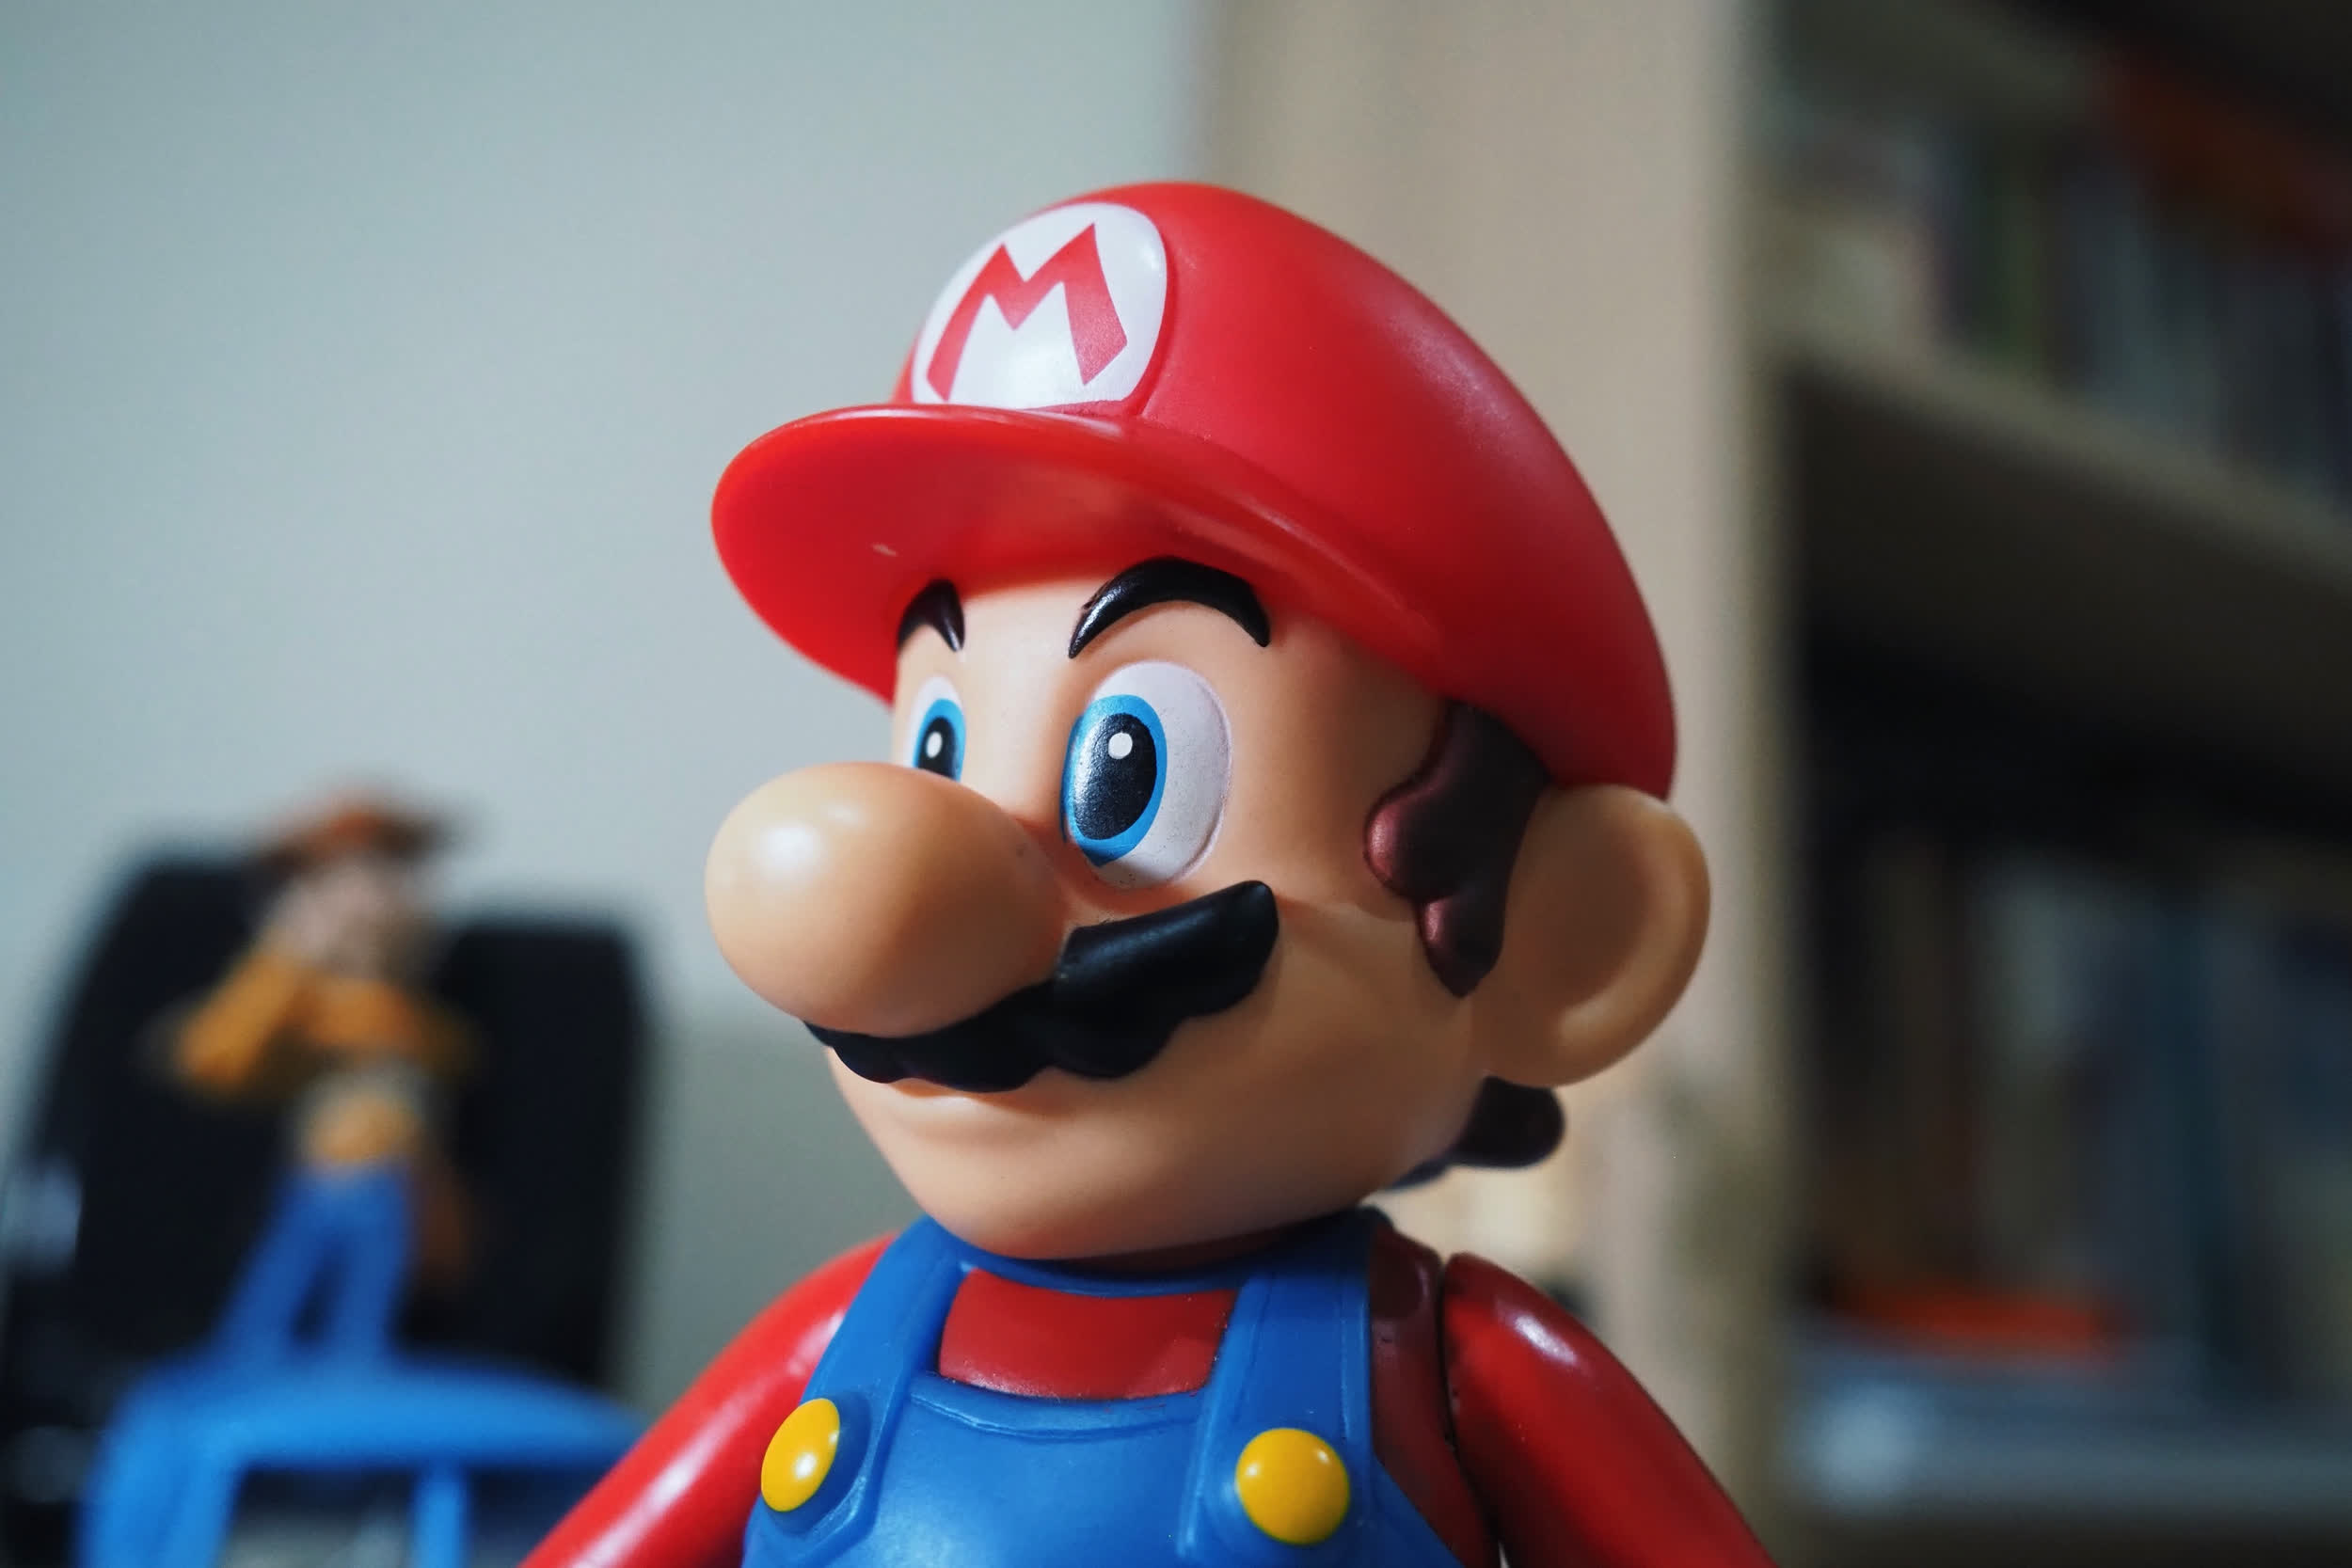 Nintendo delays Super Mario Bros. movie to spring 2023